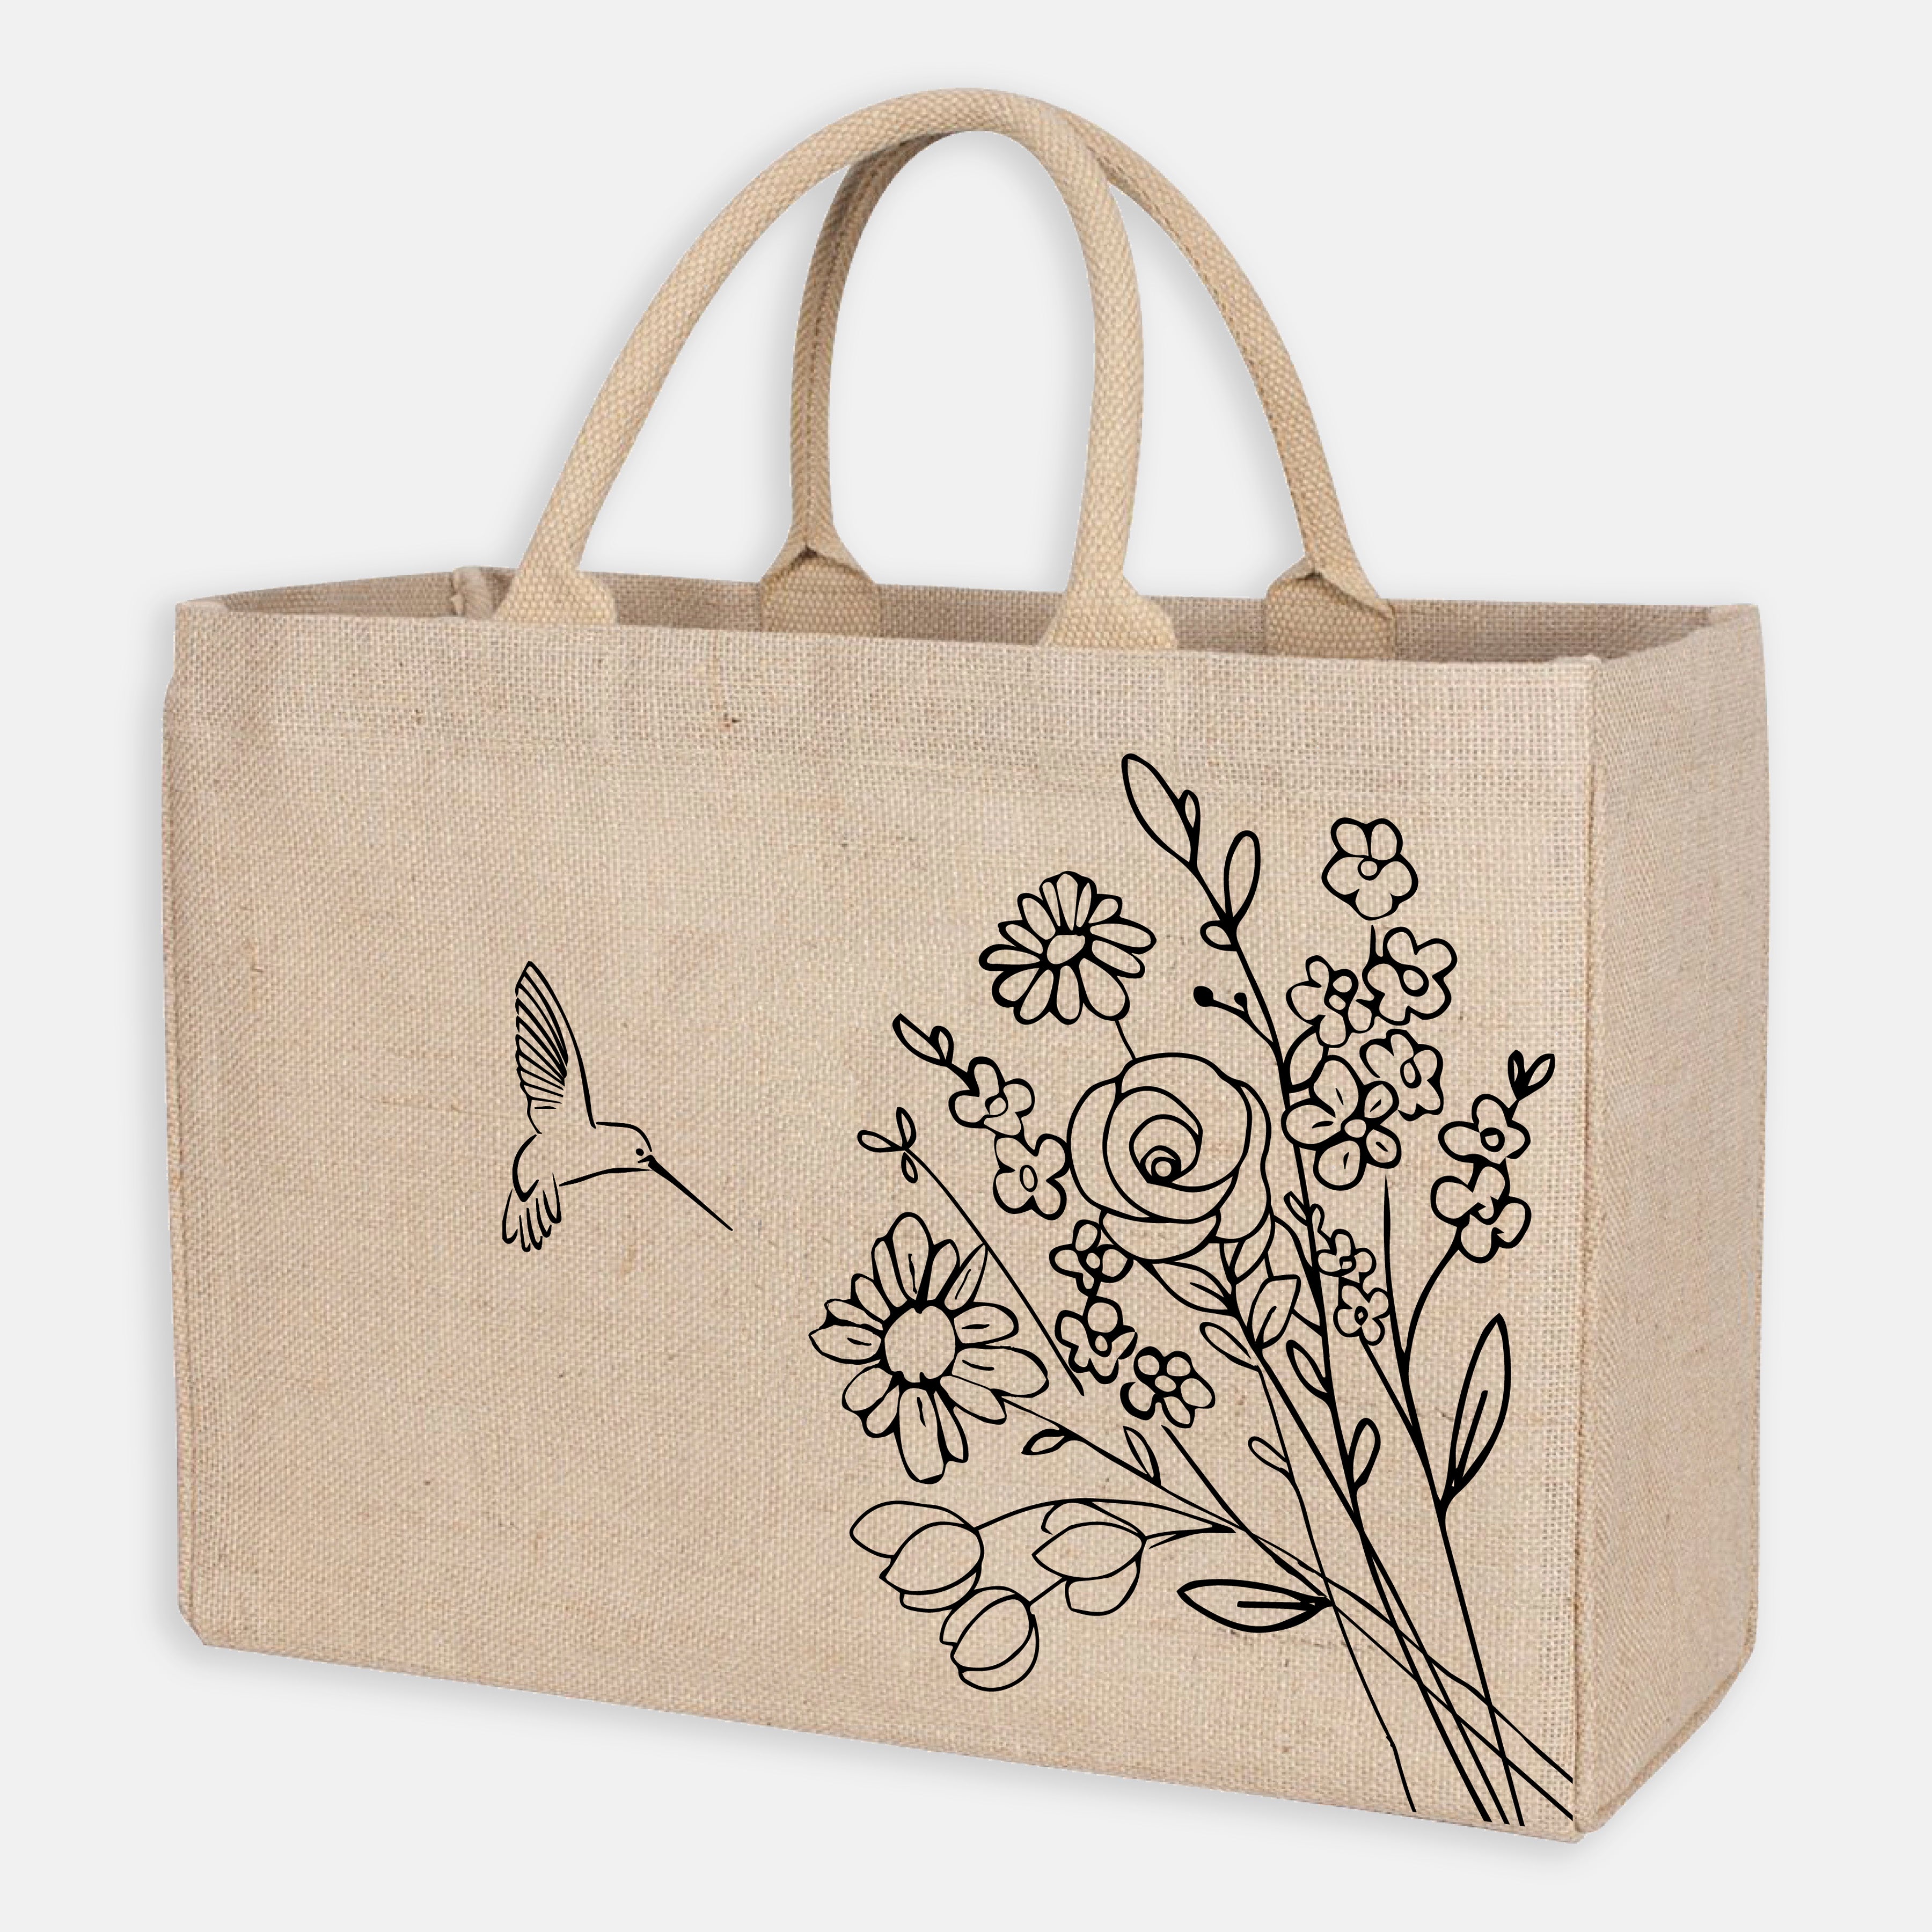 Initial Jute Bag Custom Jute Bag Floral Initial Bag 